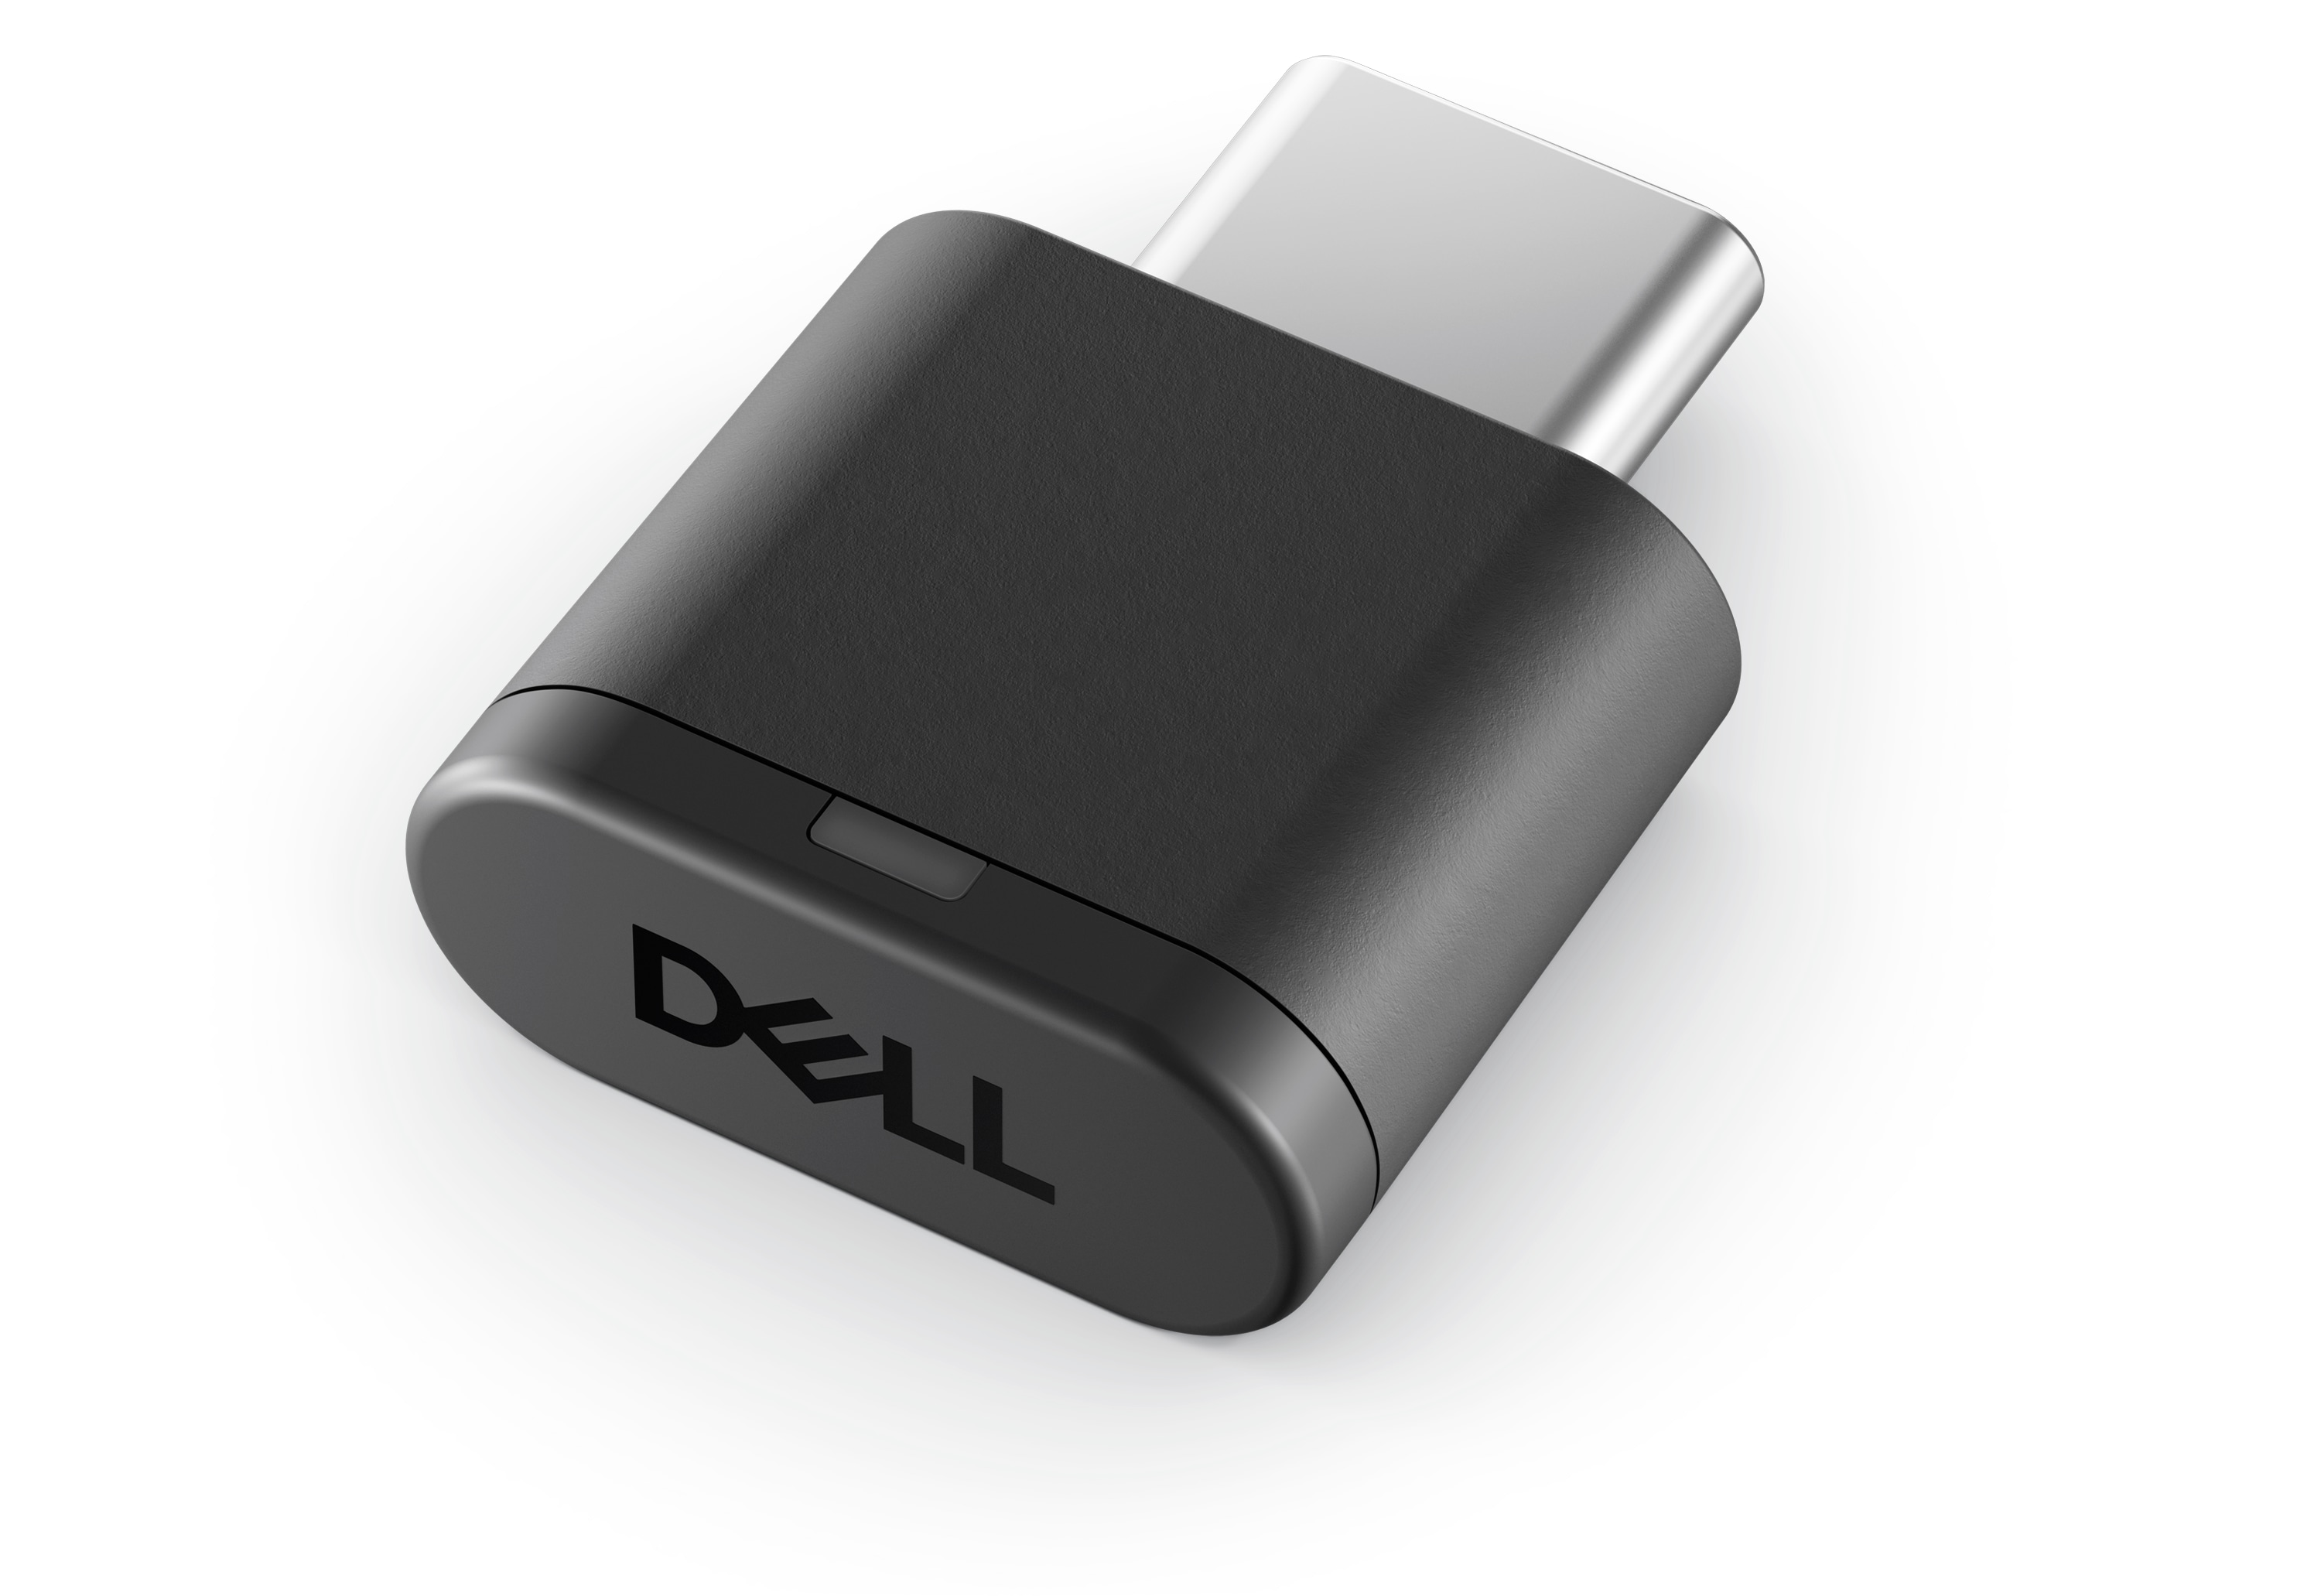 Dell Premier draadloze headset - audio vergelijken - normale ruisonderdrukking